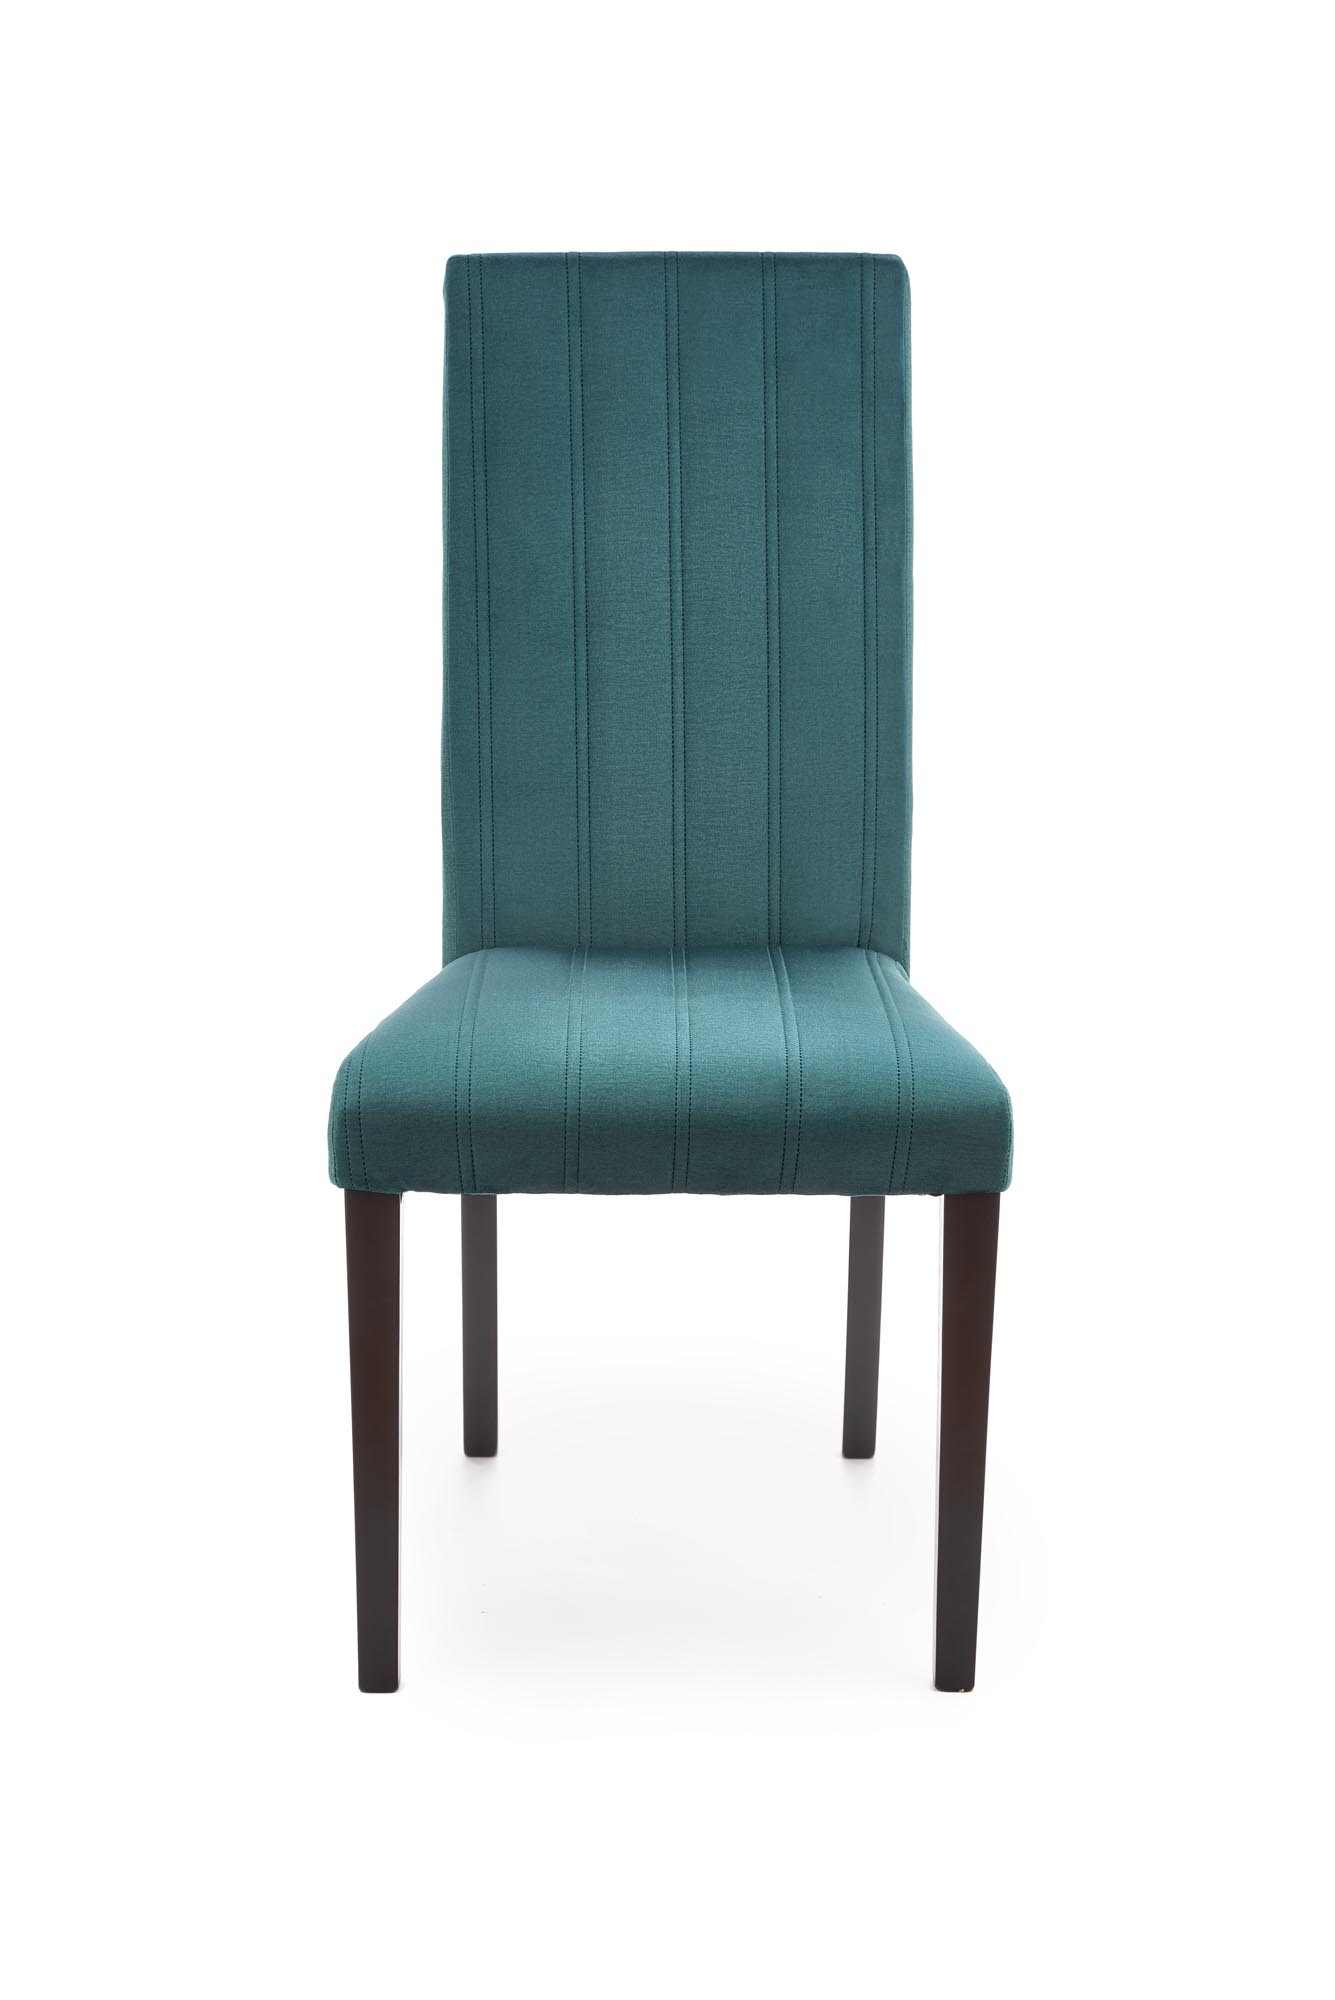 DIEGO 2 krzesło czarny / tap. velvet pikowany Pasy - MONOLITH 37 (ciemny zielony) diego 2 krzesło czarny / tap. velvet pikowany pasy - monolith 37 (ciemny zielony)